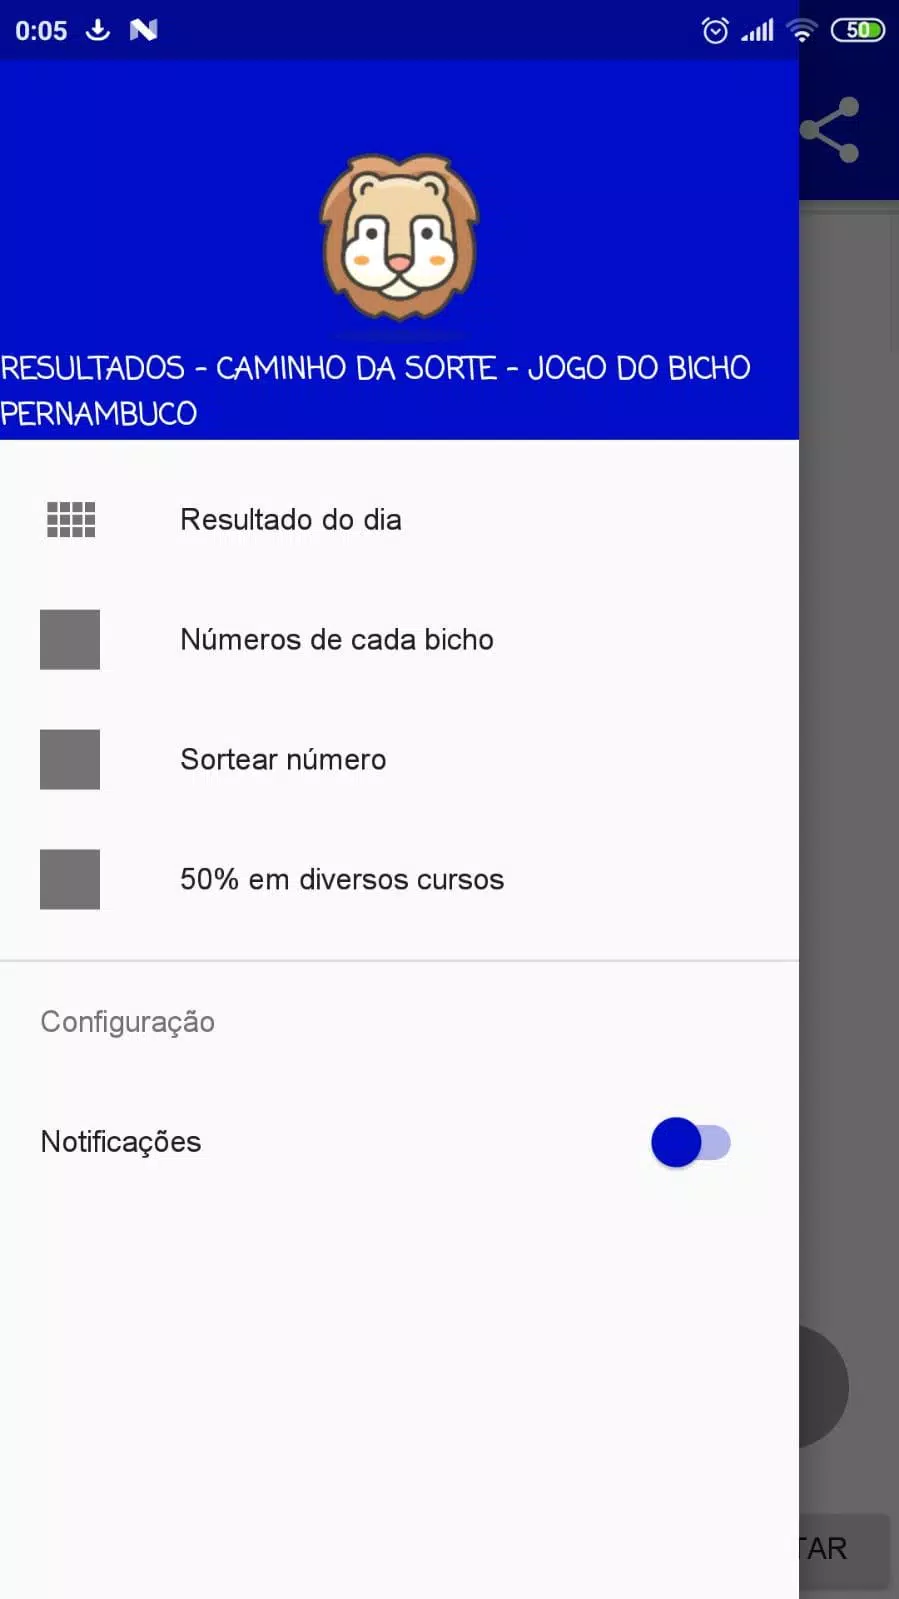 Caminho da Sorte – Jogo do Bicho Pernambuco APK für Android herunterladen